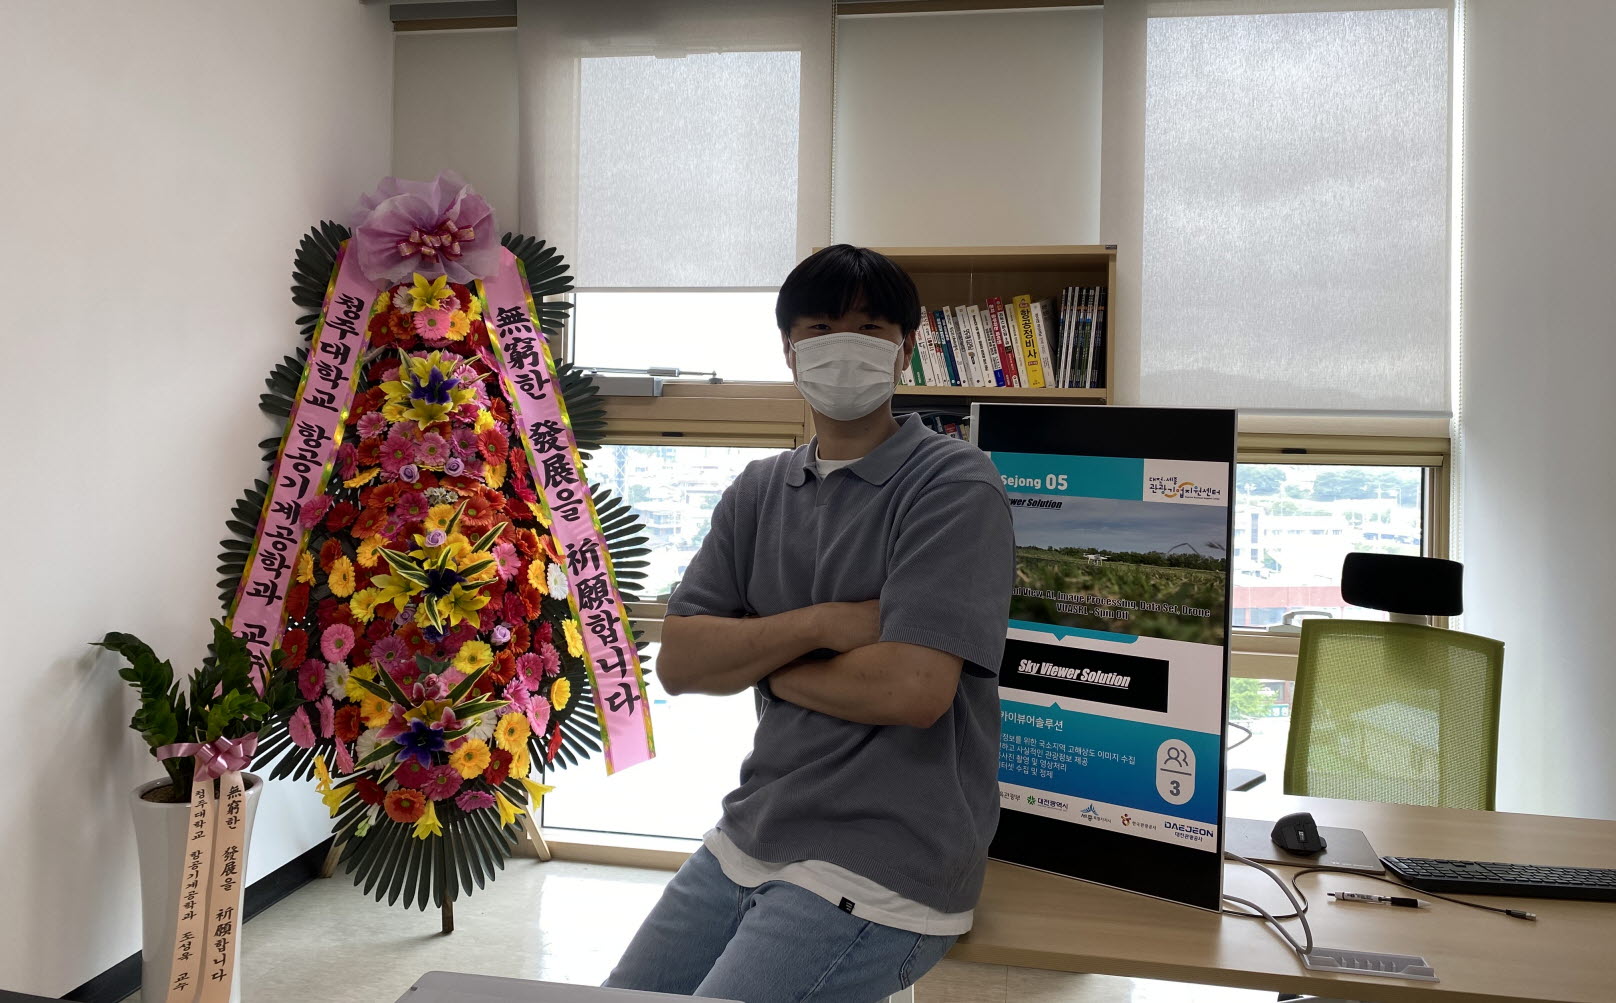 이호섭 스카이뷰어솔루션 스타트업 대표가 대전·세종관광기업지원센터 내 사무실에서 기념 촬영을 하고 있다.